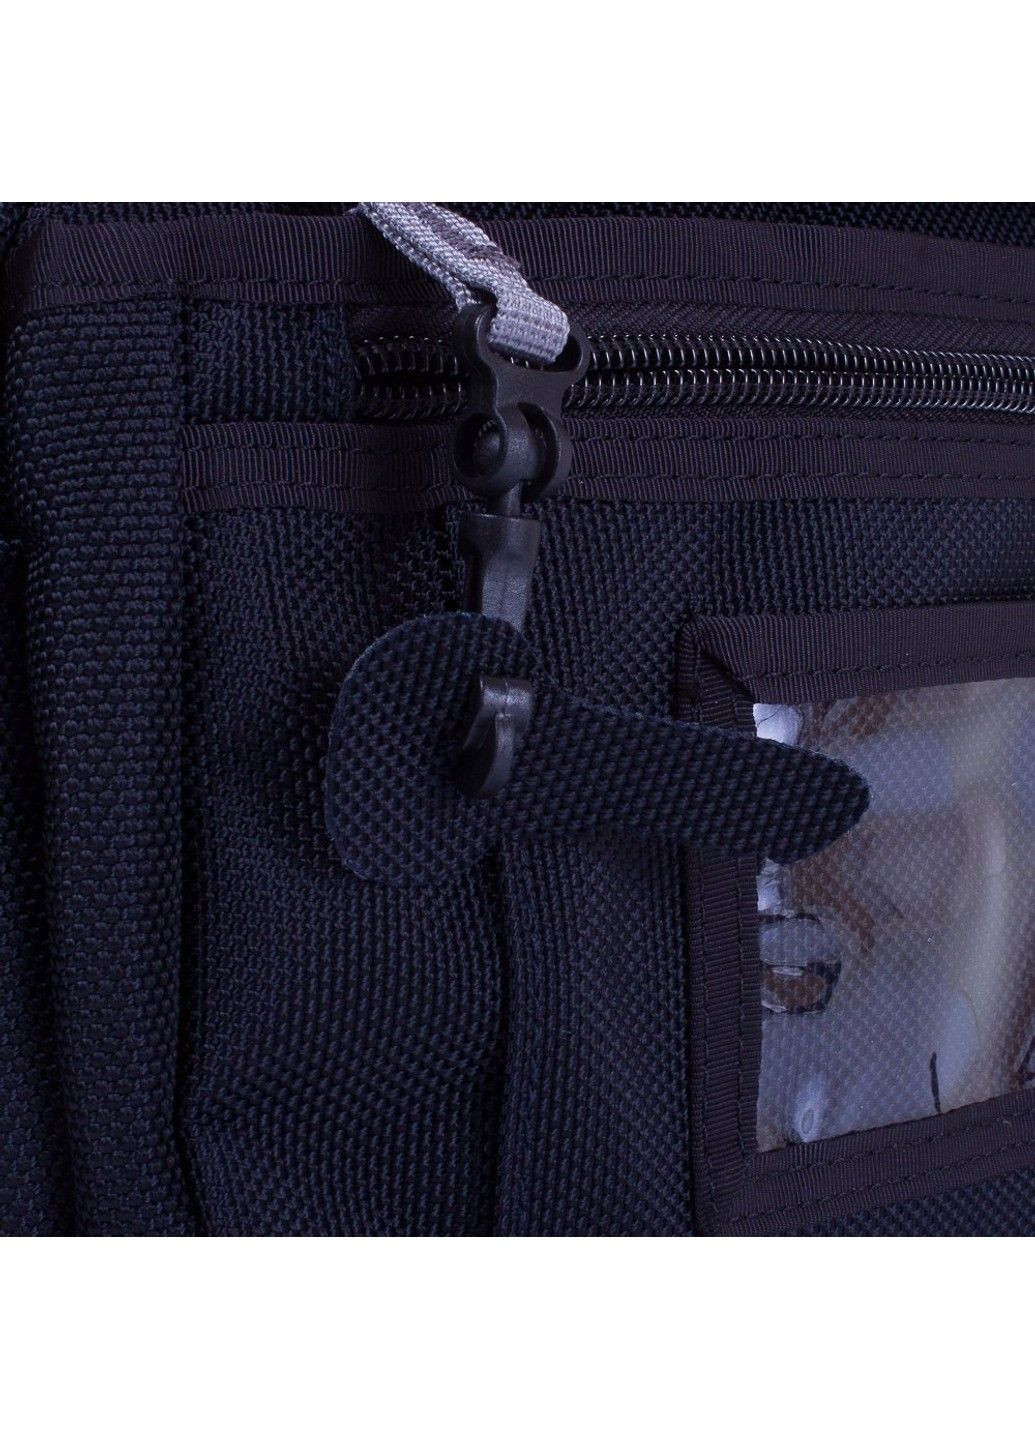 Чоловіча спортивна сумка через плече W5078-navy Onepolar (292755490)